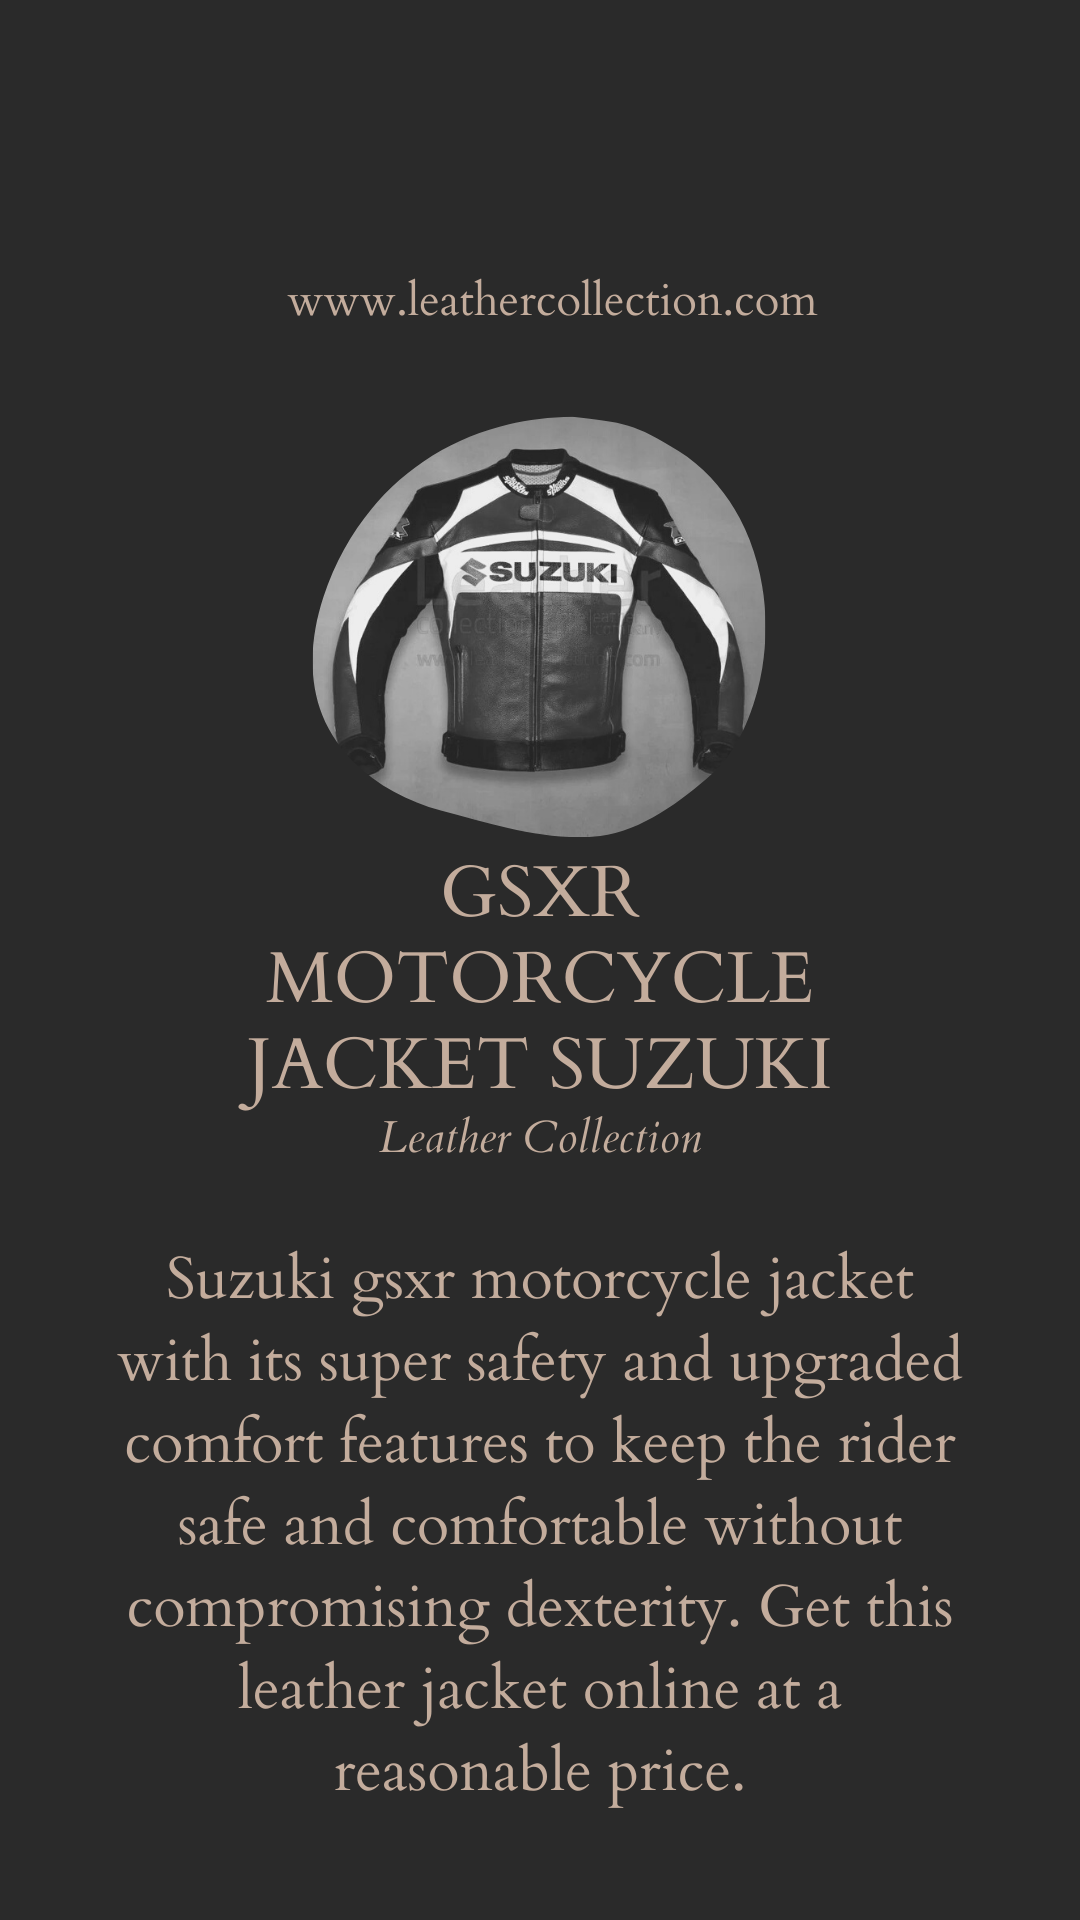 Suzuki gsxr motorcycle jacket